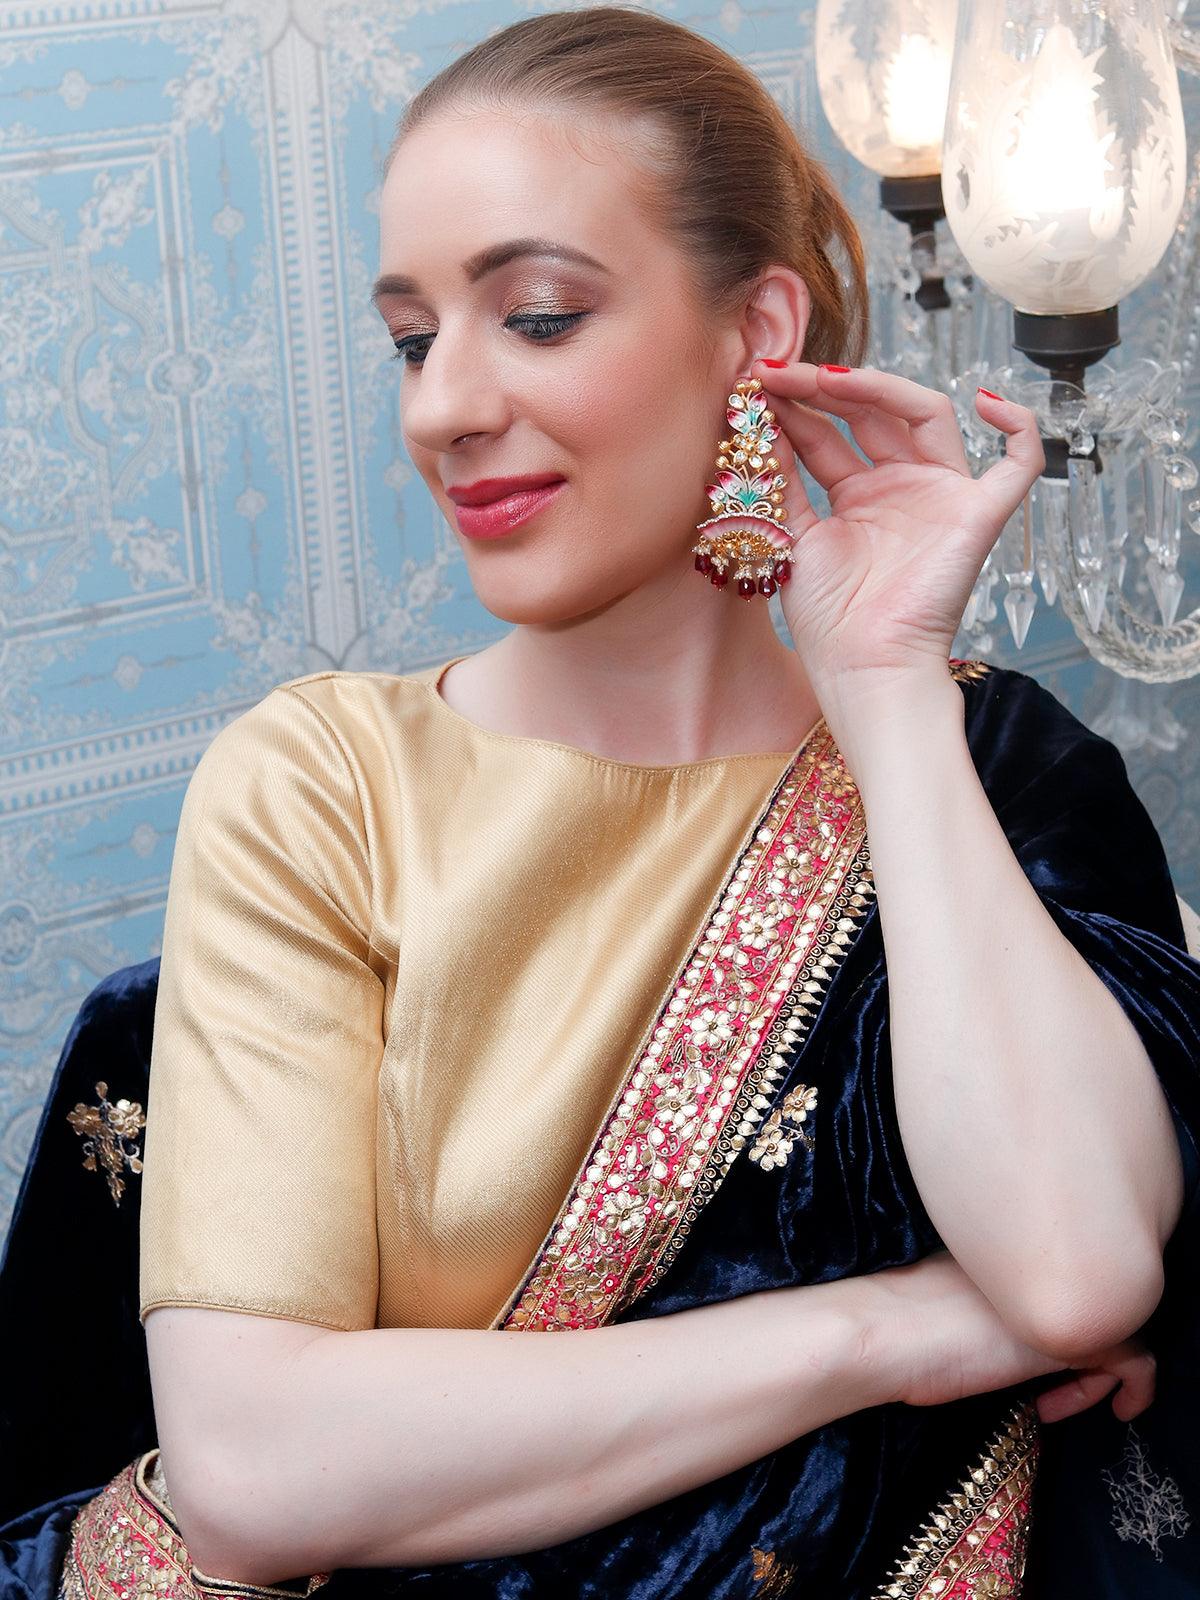 Women's Luxuriant Gold Multicolored Dangling Earrings - Odette